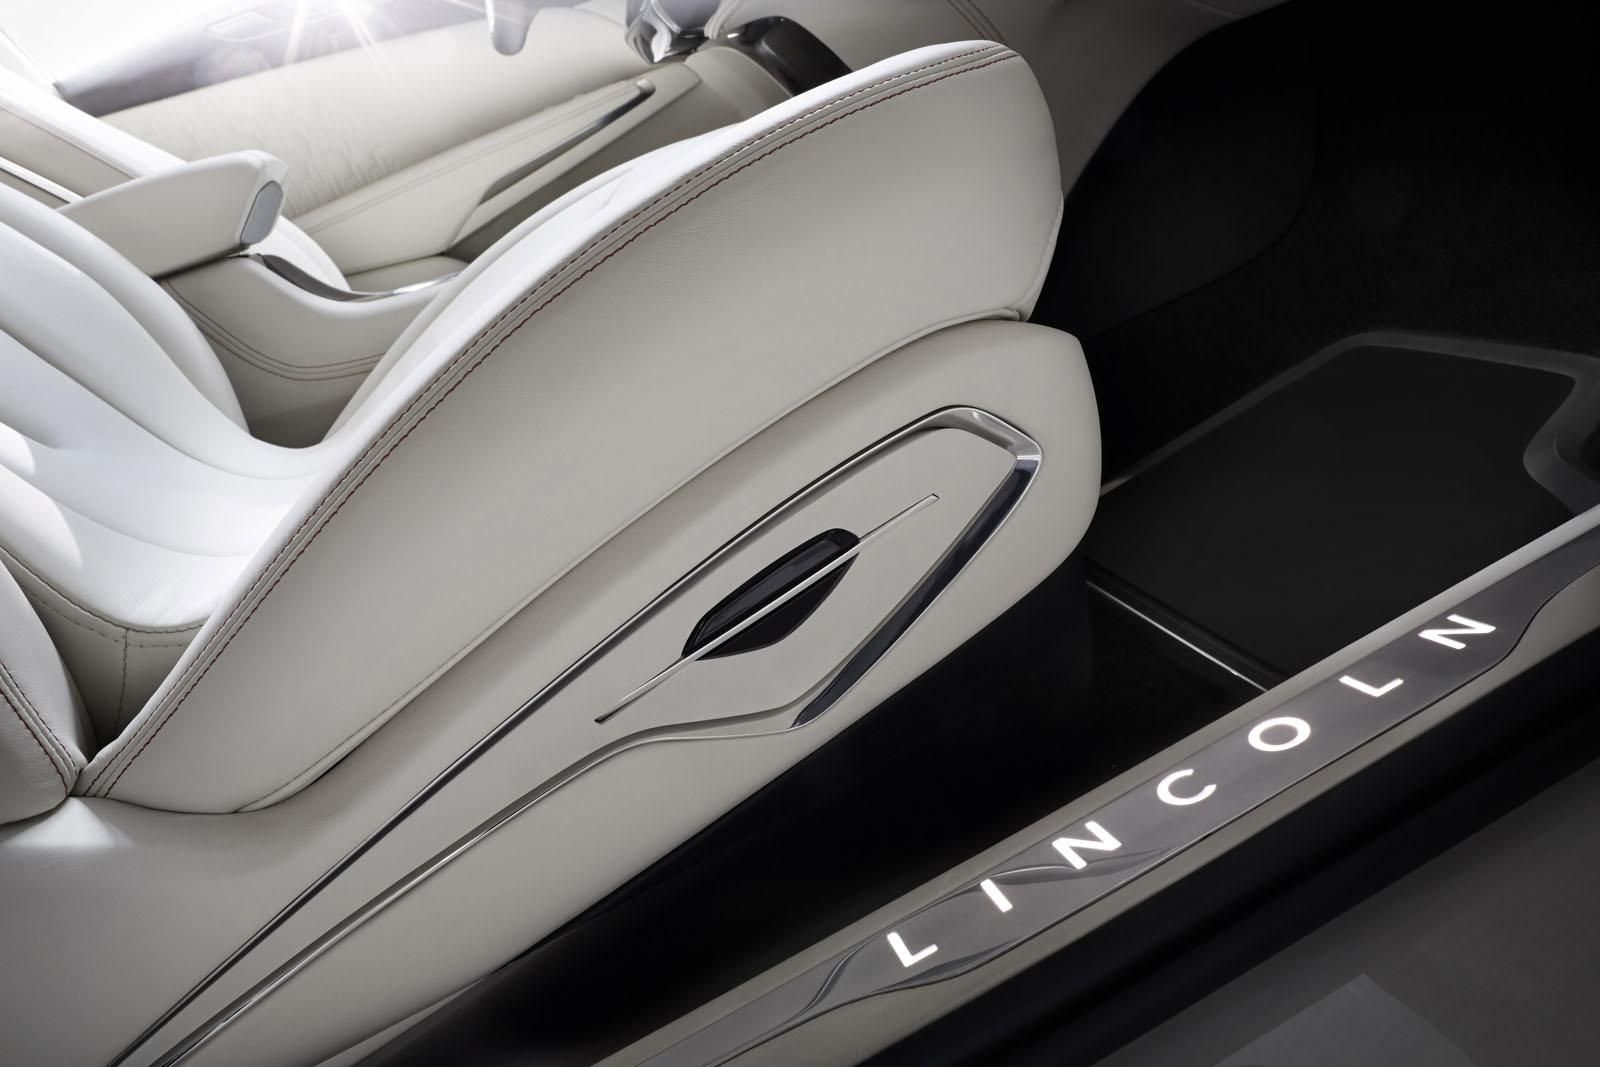 2014 Lincoln MKC Black Label Concept